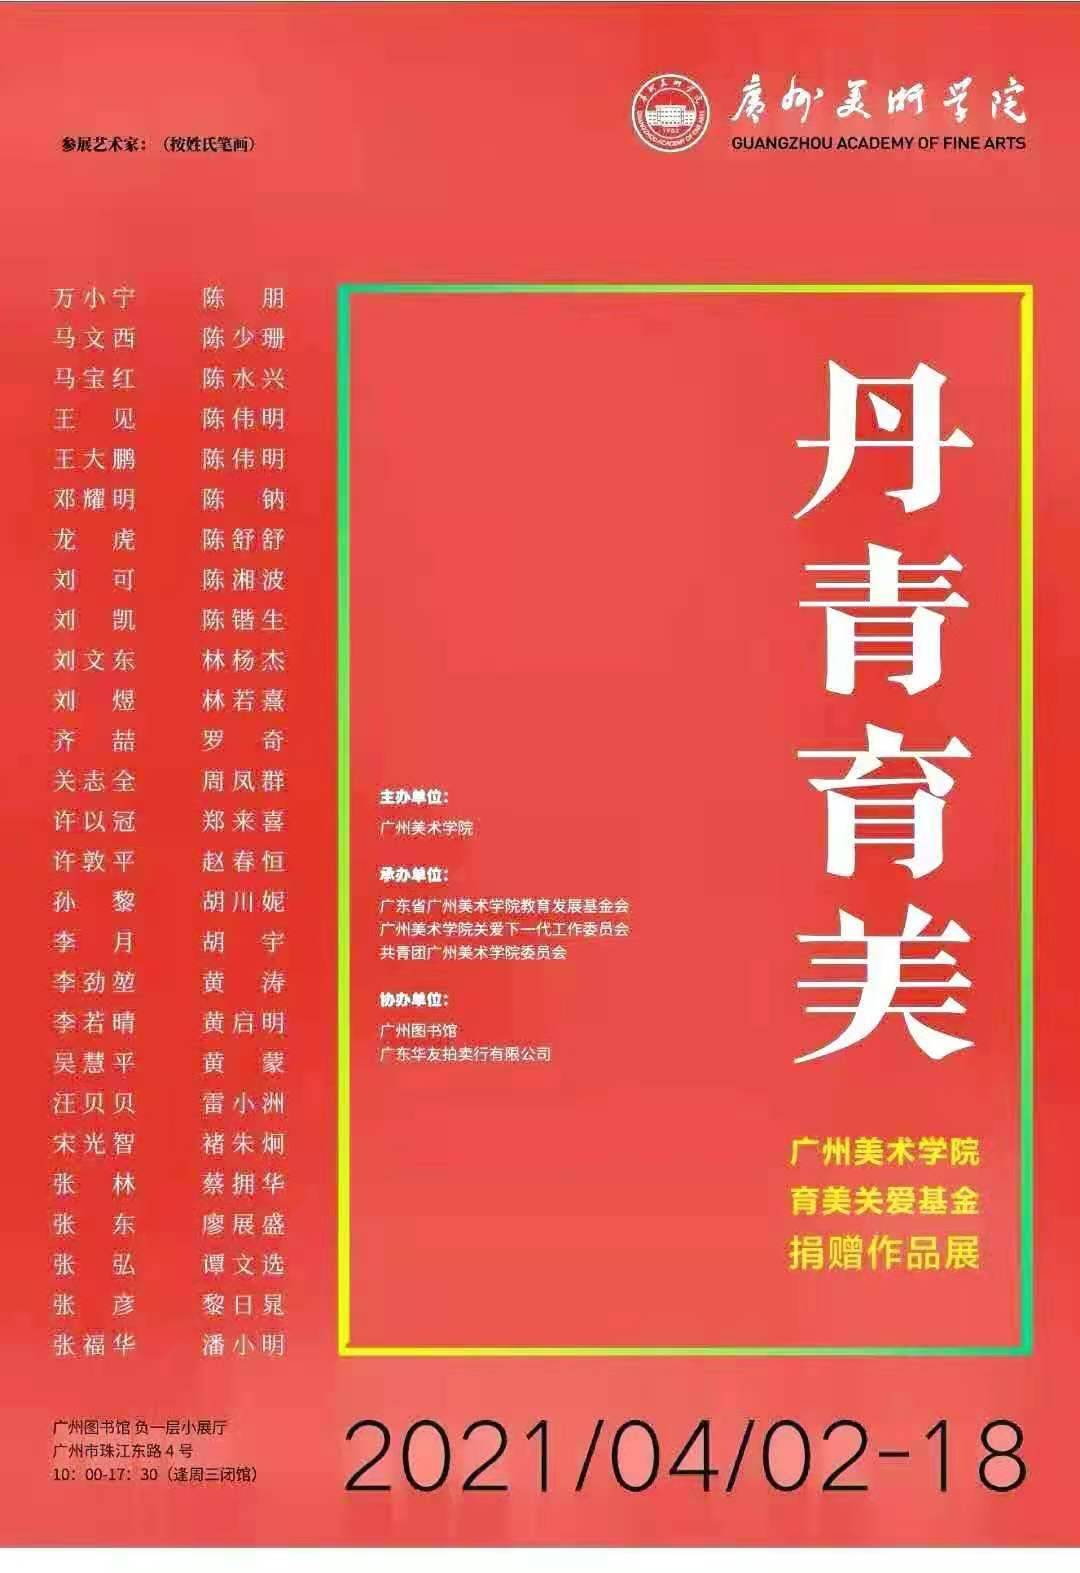 丹青育美——广州美术学院育美关爱基金捐赠作品展在广州图书馆举行